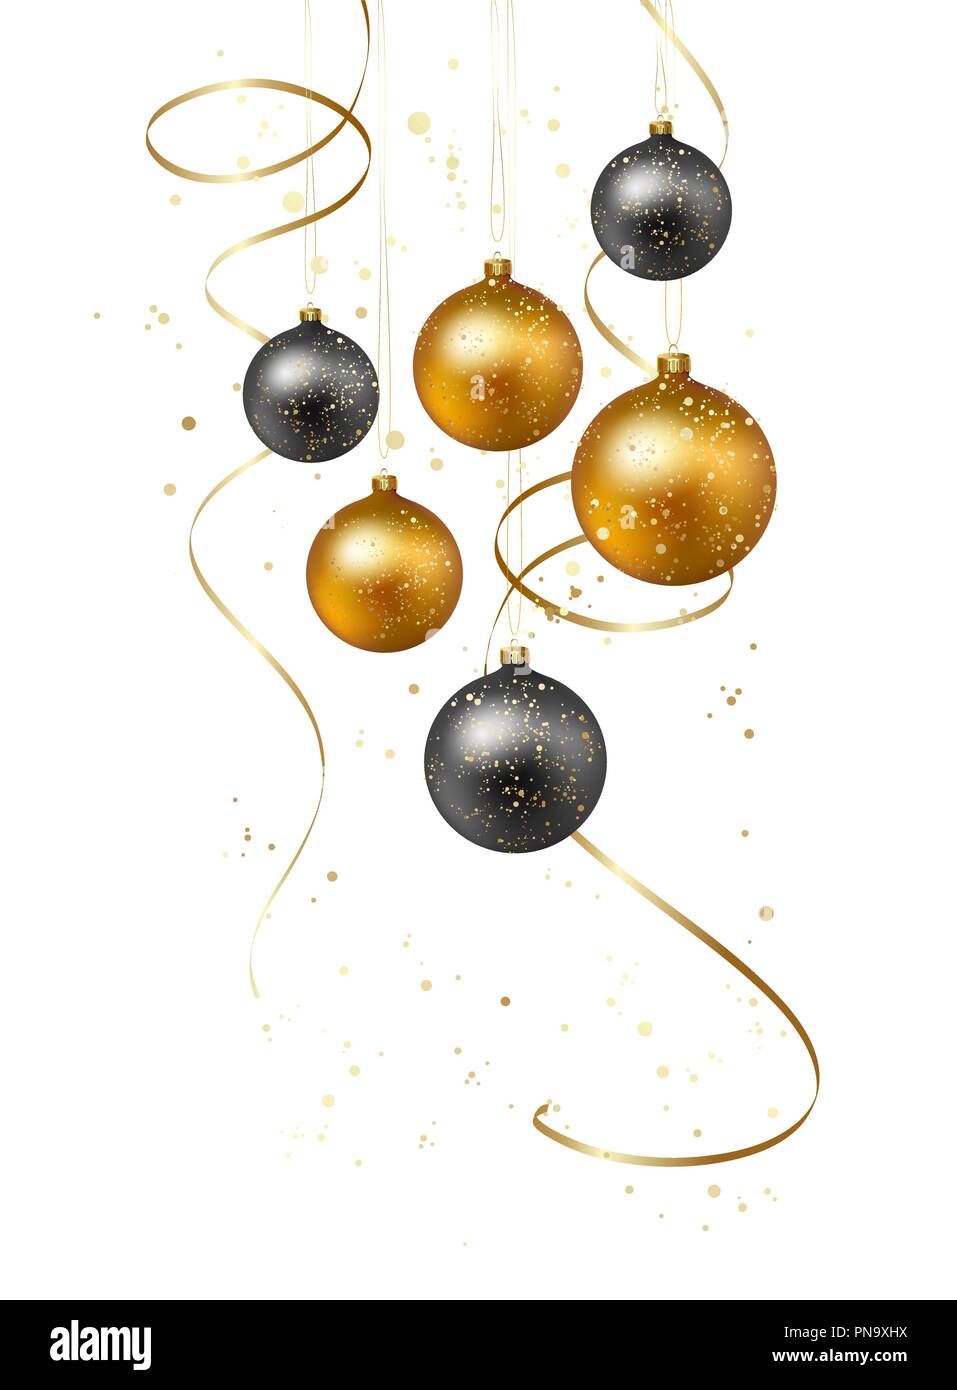 Fond de Noël avec des boules d'or et serpentine Illustration de Vecteur